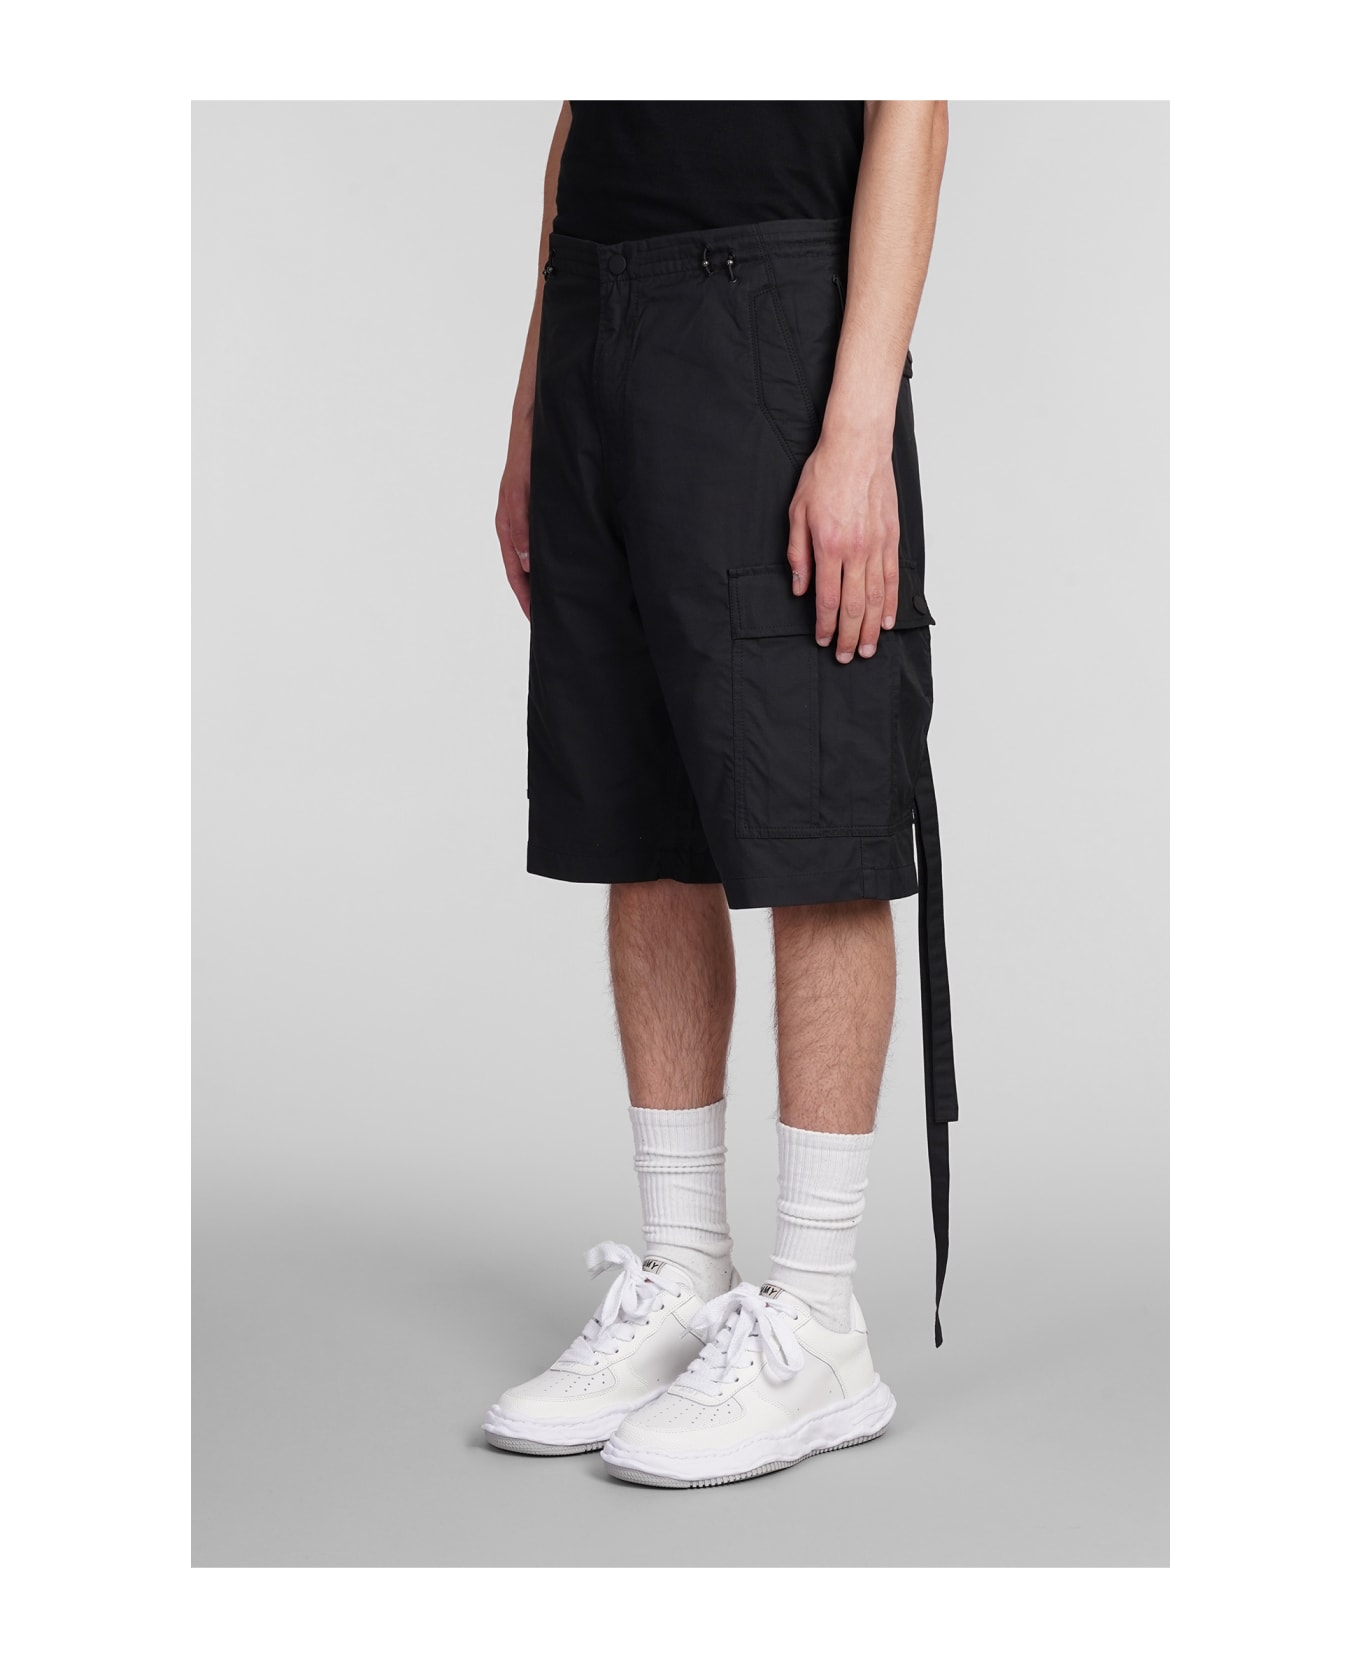 Maharishi Shorts In Black Cotton - black ショートパンツ